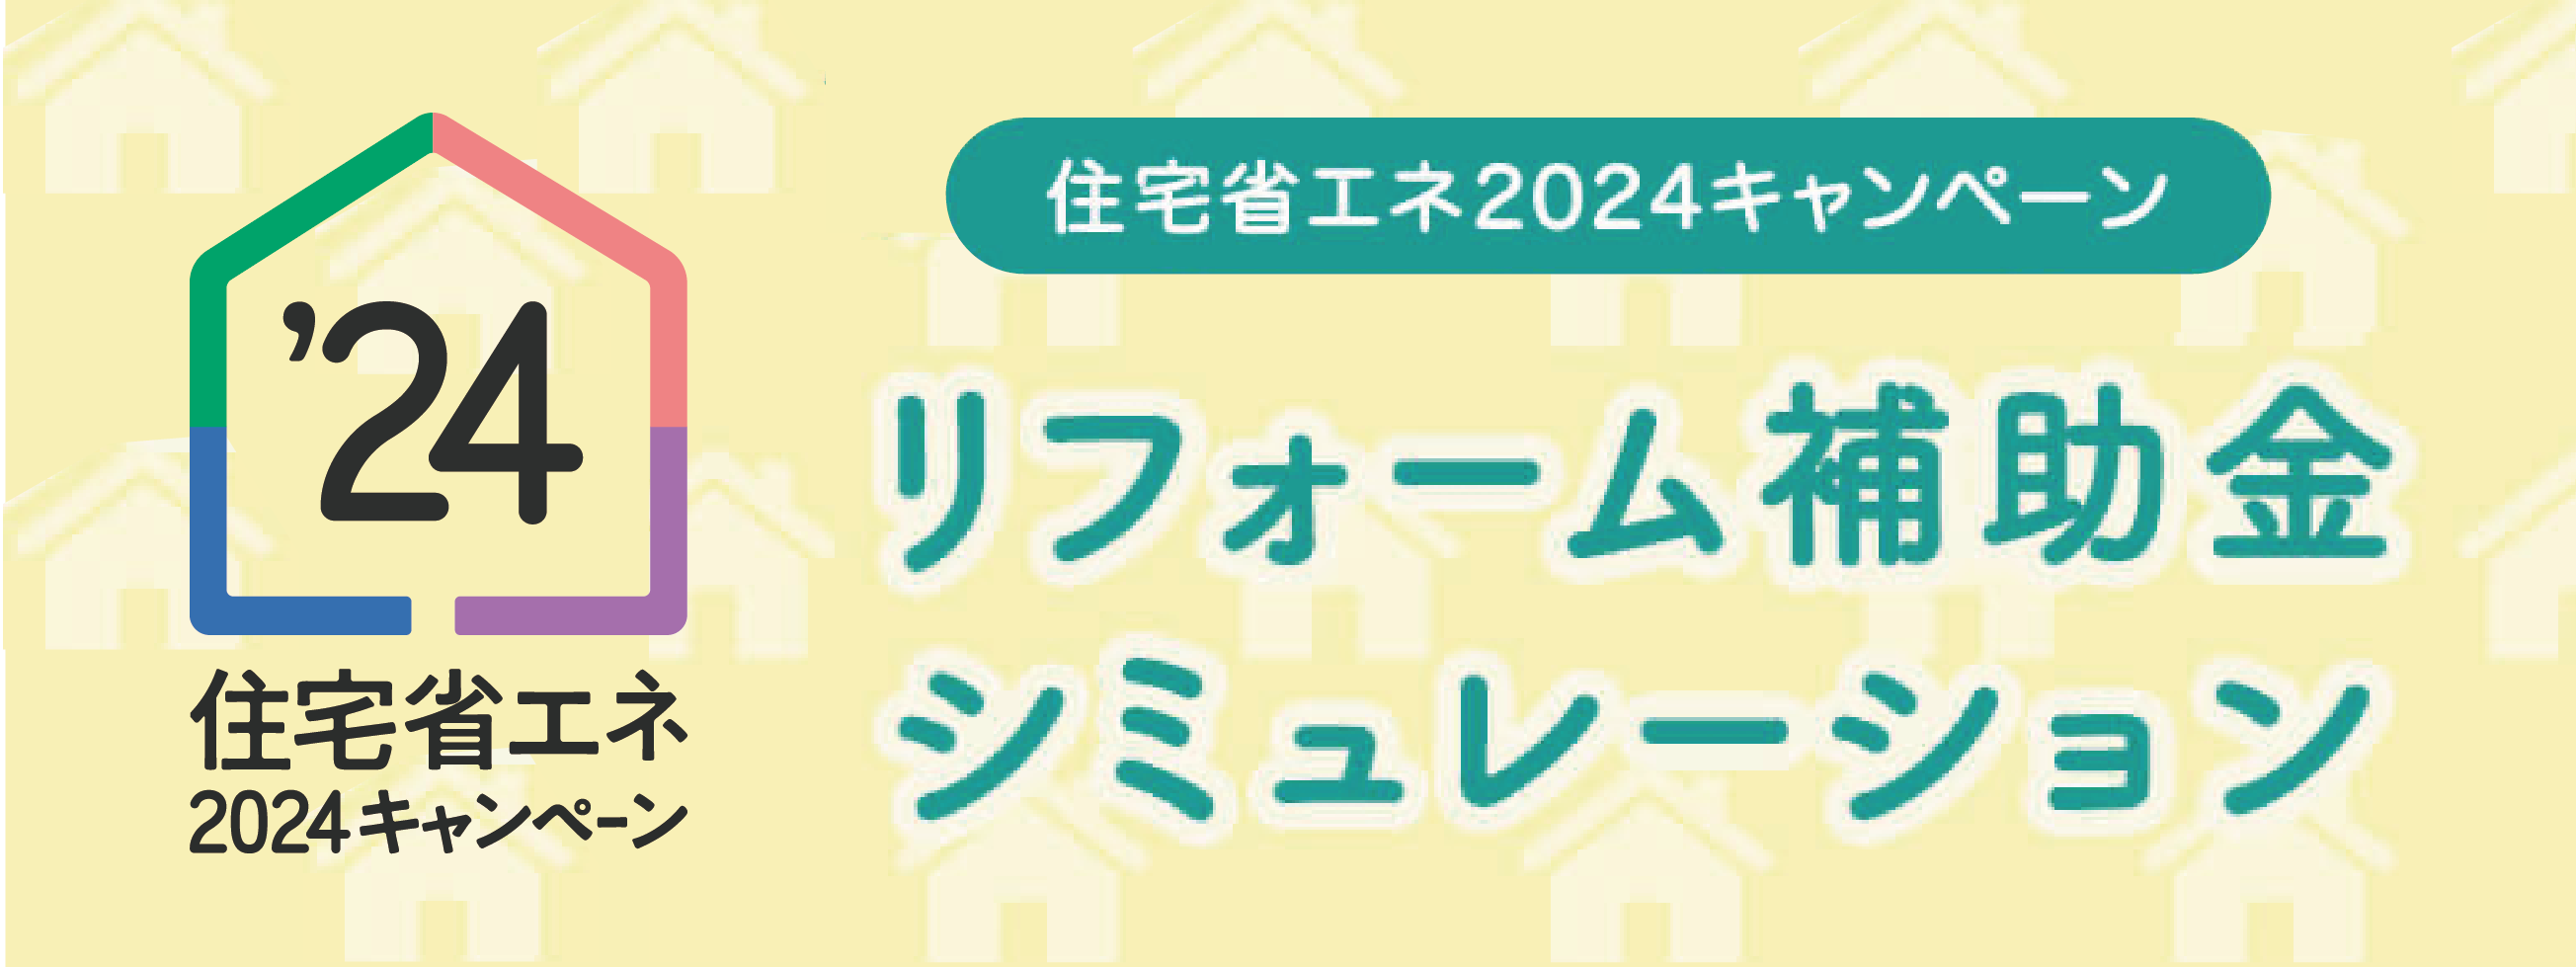 【あと1年で再配達できなくなる!?】物流の2024年問題と対策 南横浜トーヨー住器のイベントキャンペーン 写真3